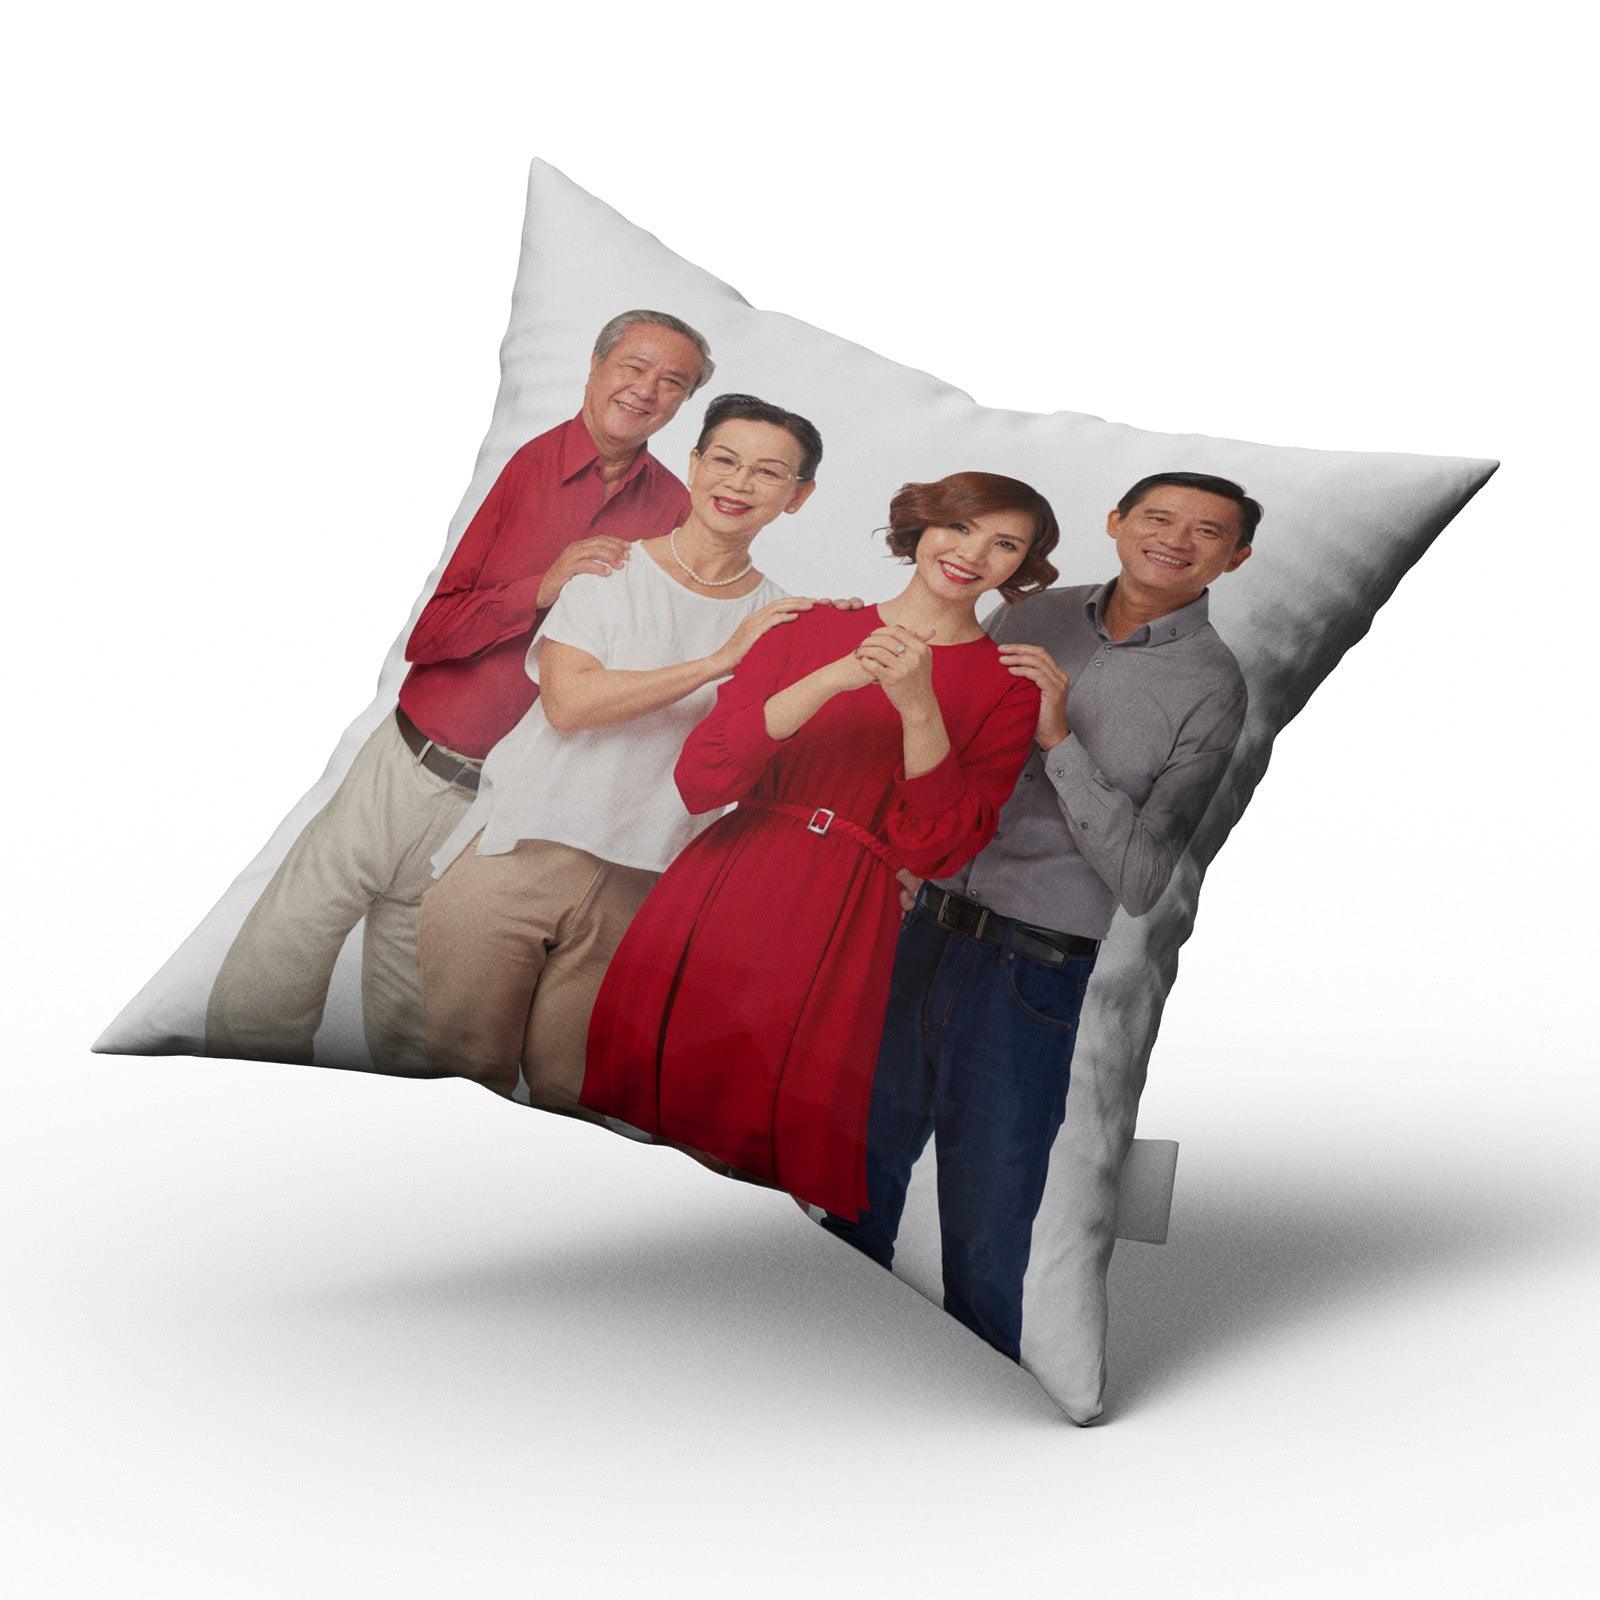 Custom Photo Pillows Custom Photo Pillows - undefined - Qstomize.com